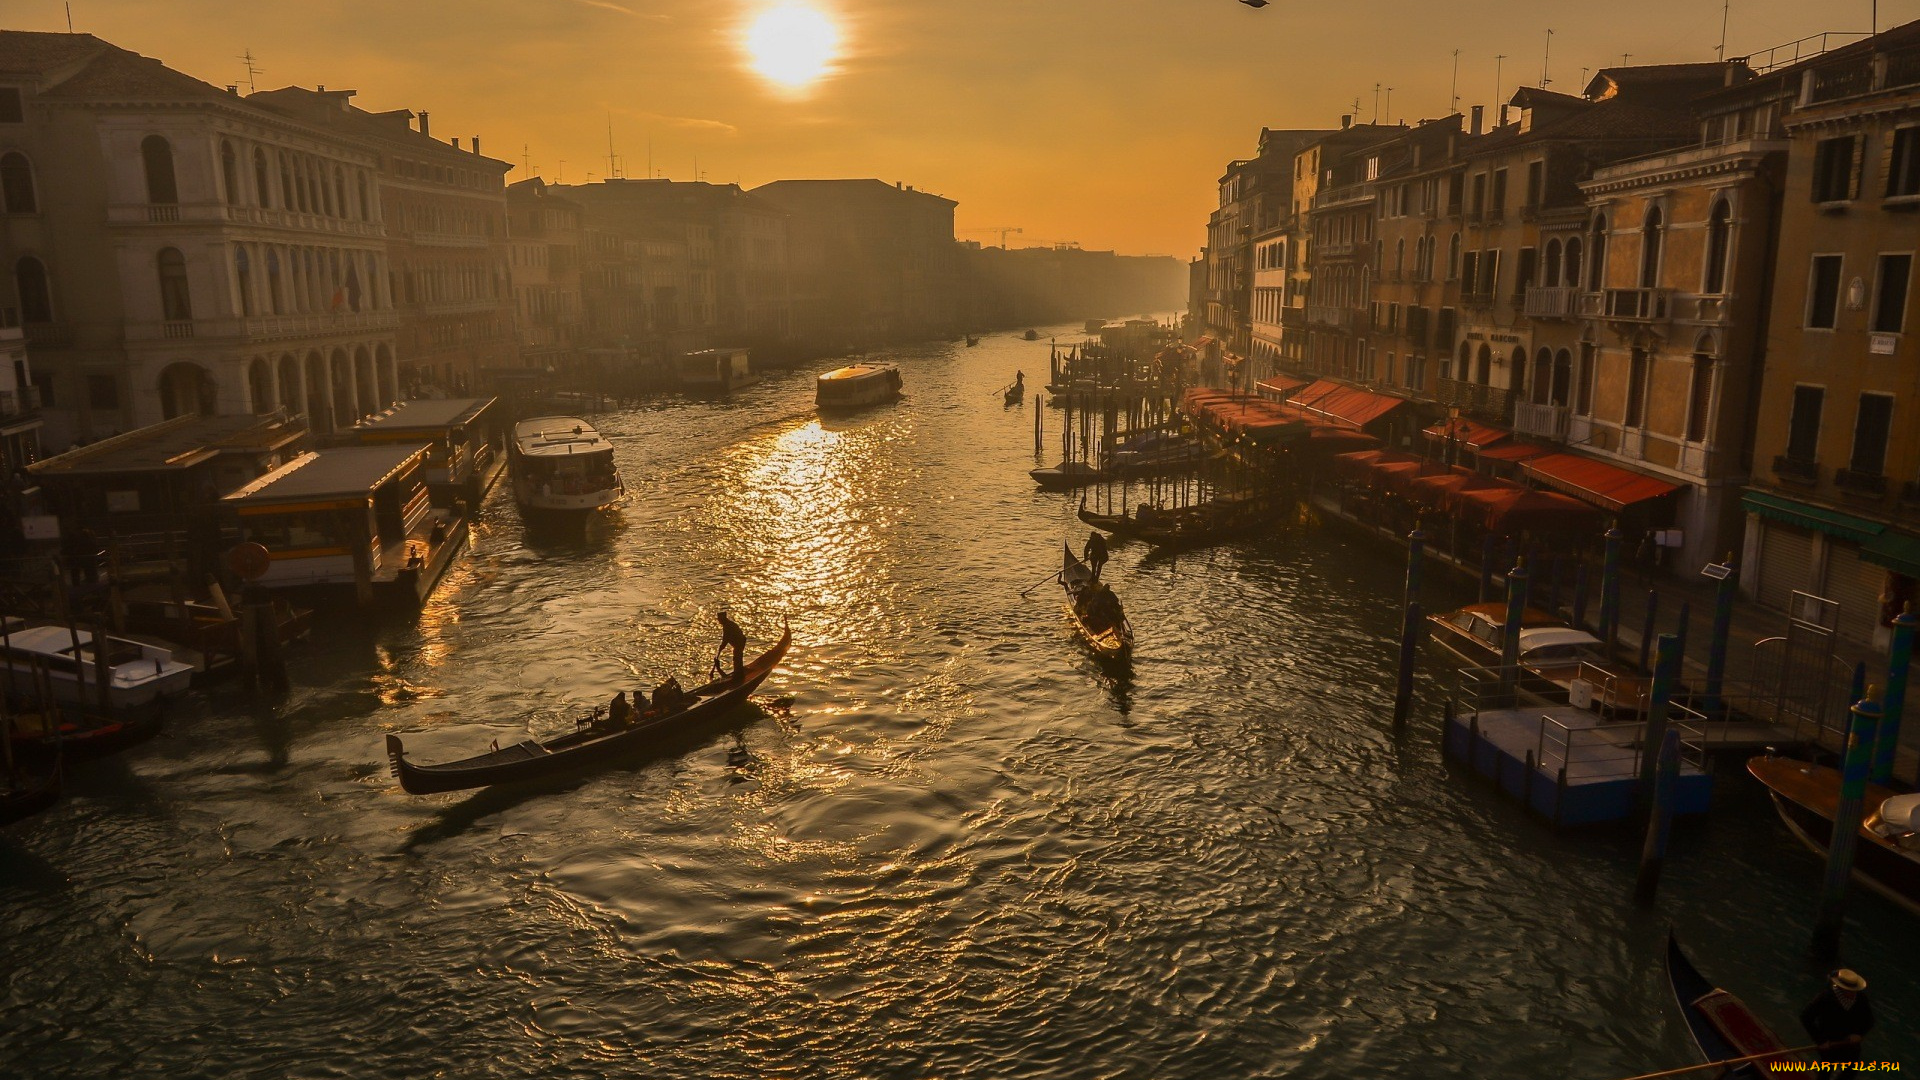 города, венеция, , италия, канал, лодки, гондолы, дома, здания, причалы, солнце